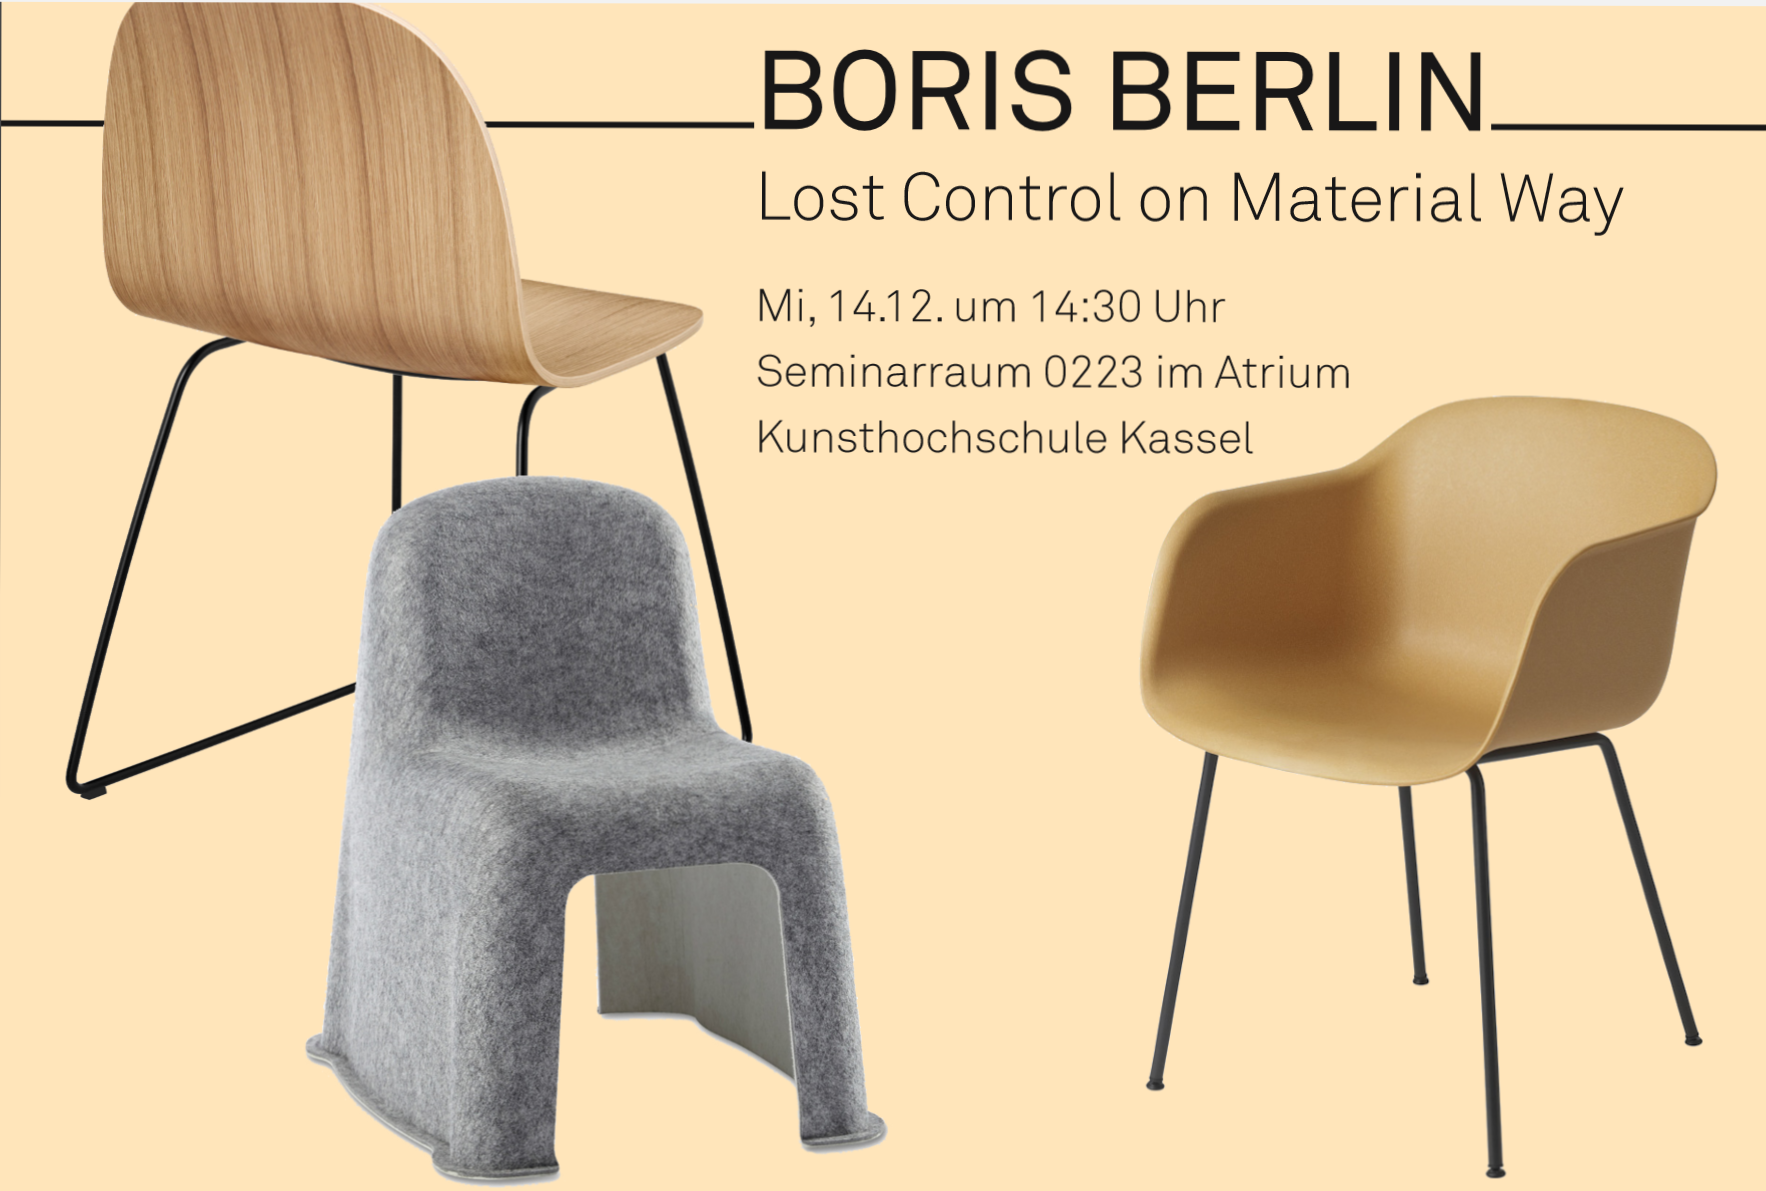 Vortrag von Boris Berlin 